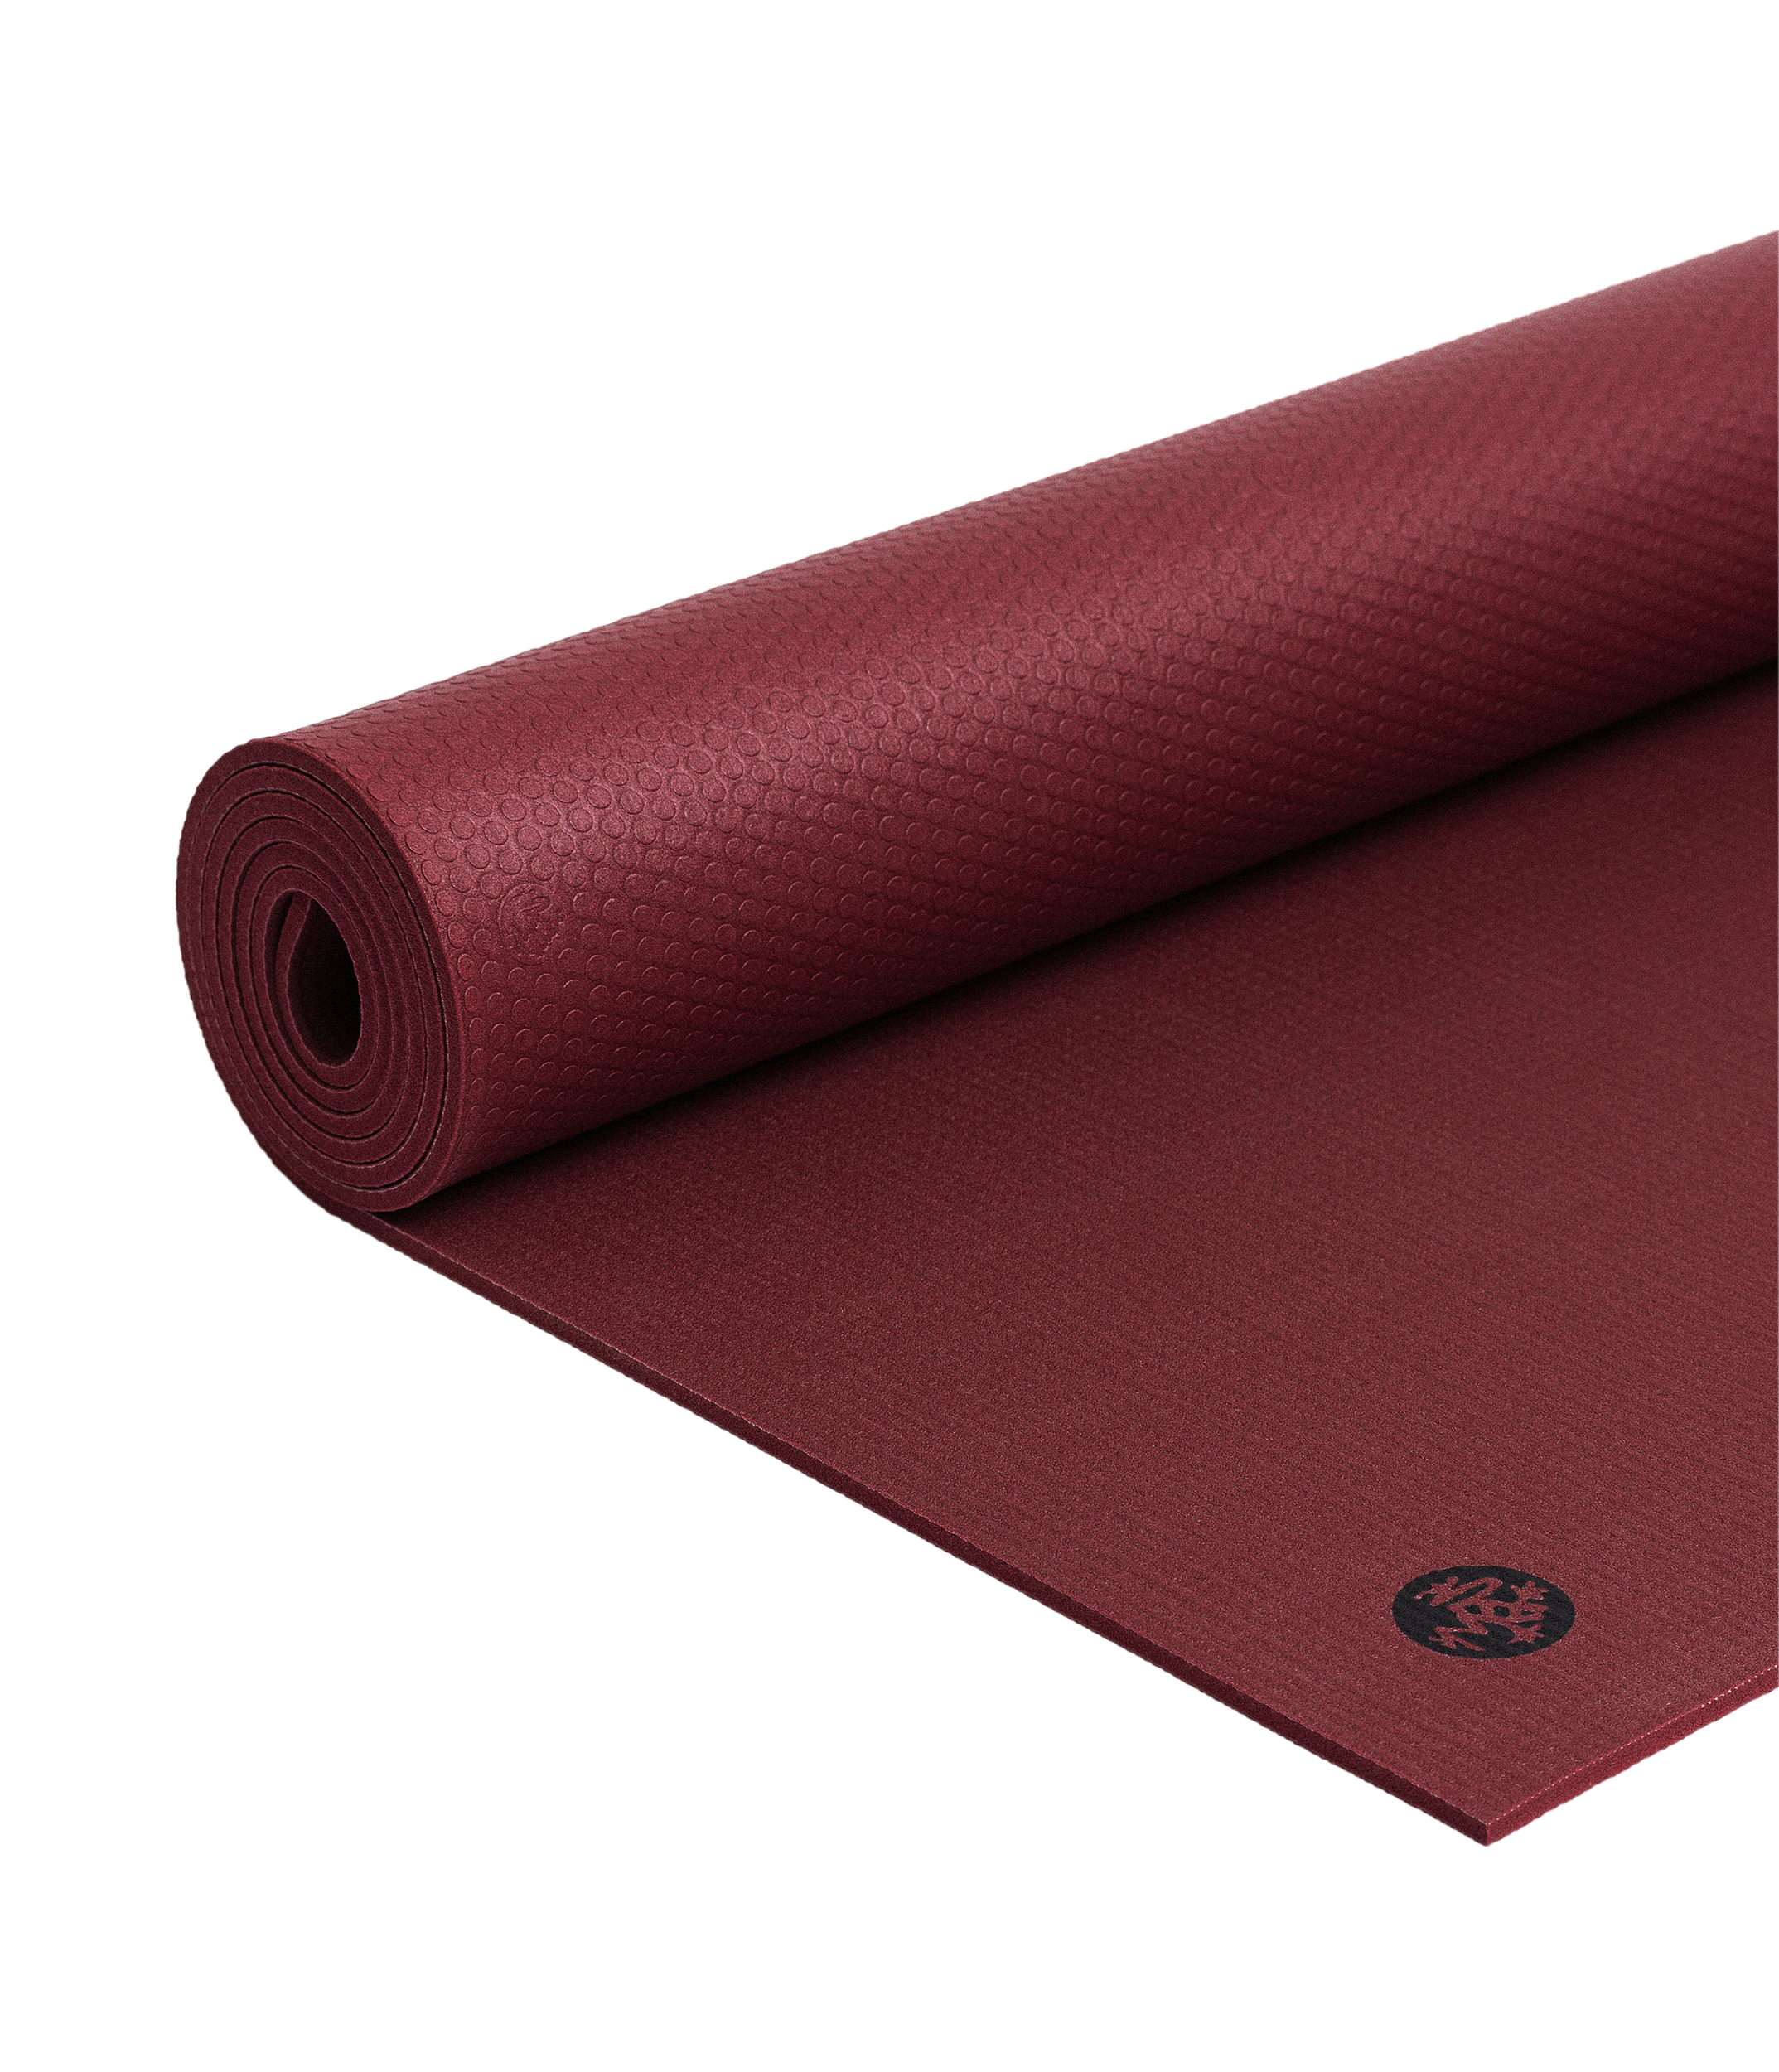 Manduka Pro Yoga mat 6mm. – Verve » I FEEL YOGA